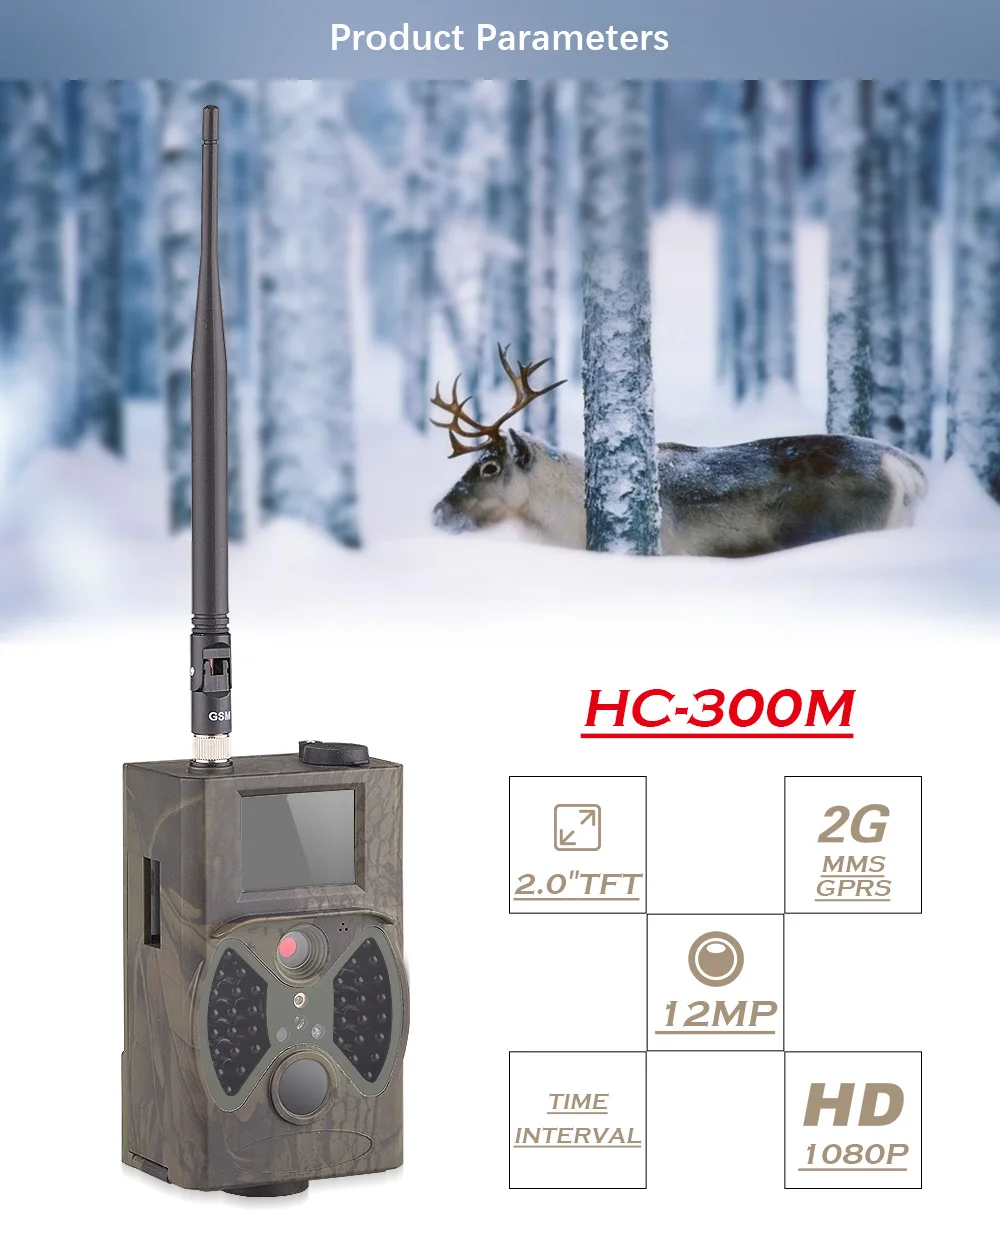 Suntek Охота Trail камера 2 г GSM MMS HC300M Full HD 12MP 1080 P видео ночное видение Скаутинг инфракрасный дикой природы наблюдения